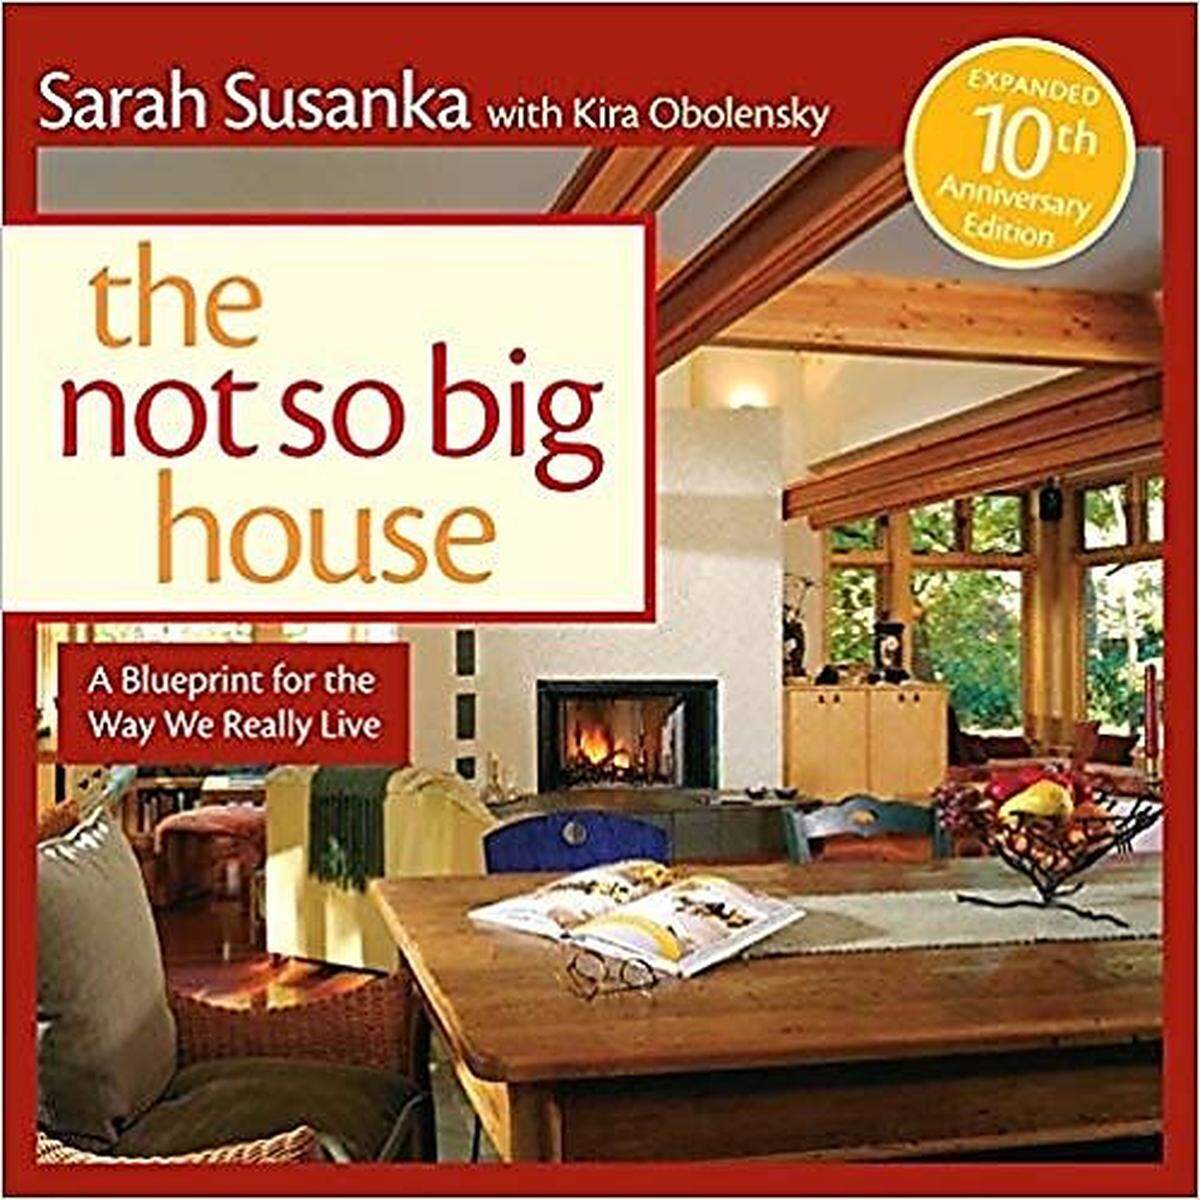 Lifestyle. Als Begründerin des Tiny House Movements gilt die englische Architektin Sarah Susanka. In ihrem Buch "The Not So Big House" thematisierte sie 1997 erstmals smarte kleine Häuser als neues Statussymbol. Dazu gehört auch die Idee, mit weniger Habseligkeiten auszukommen und flexibel zu sein. Eine Kombination mit Self-Storage ist nicht ganz stilecht, erleichtert aber beides.